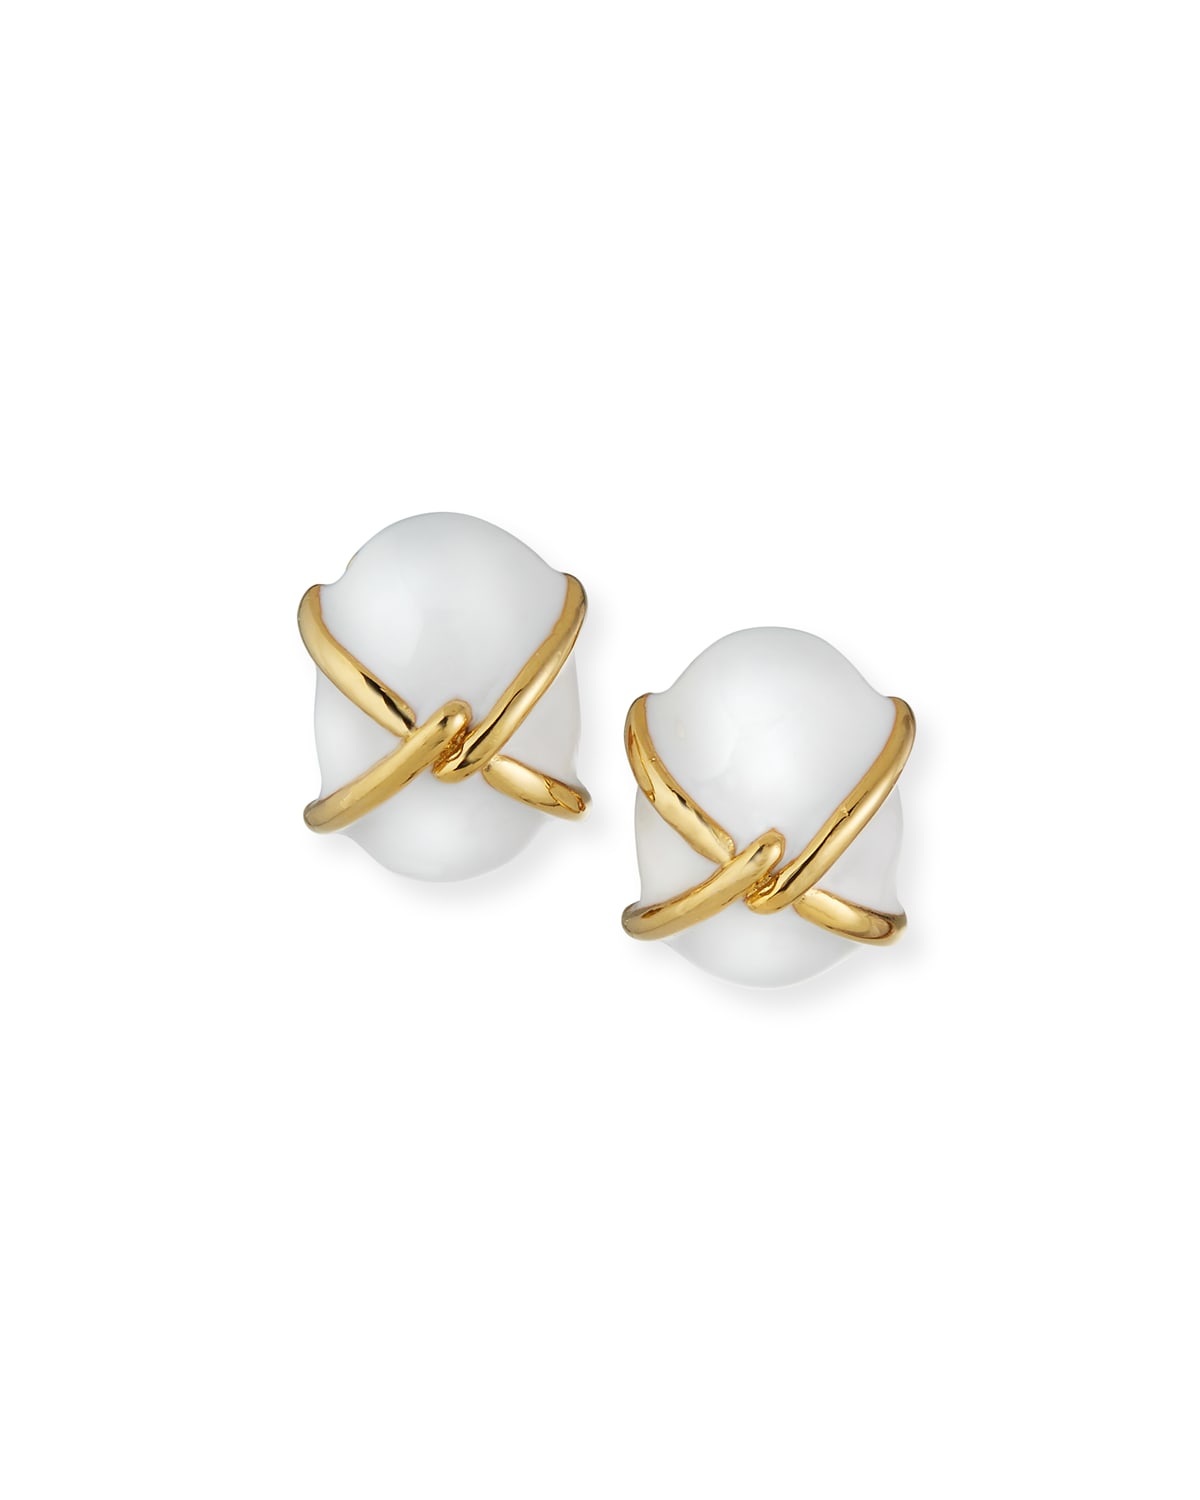 Kenneth Jay Lane Enamel Clip Earrings, White